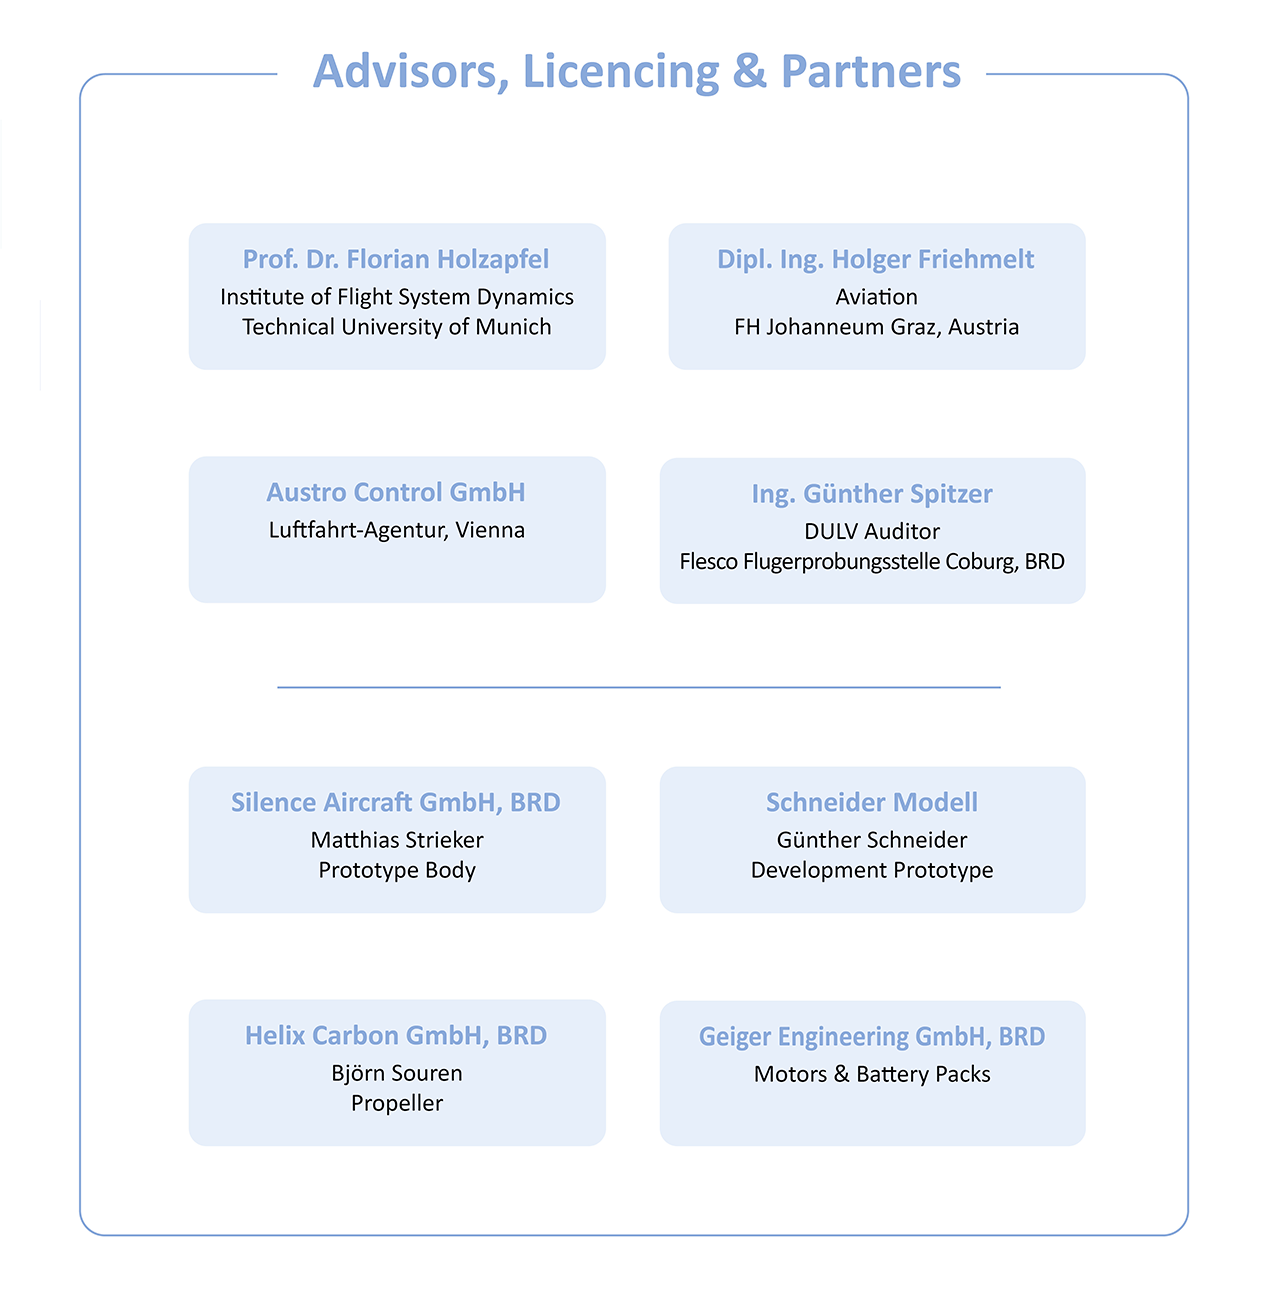 Advisors, Licensing, Partners